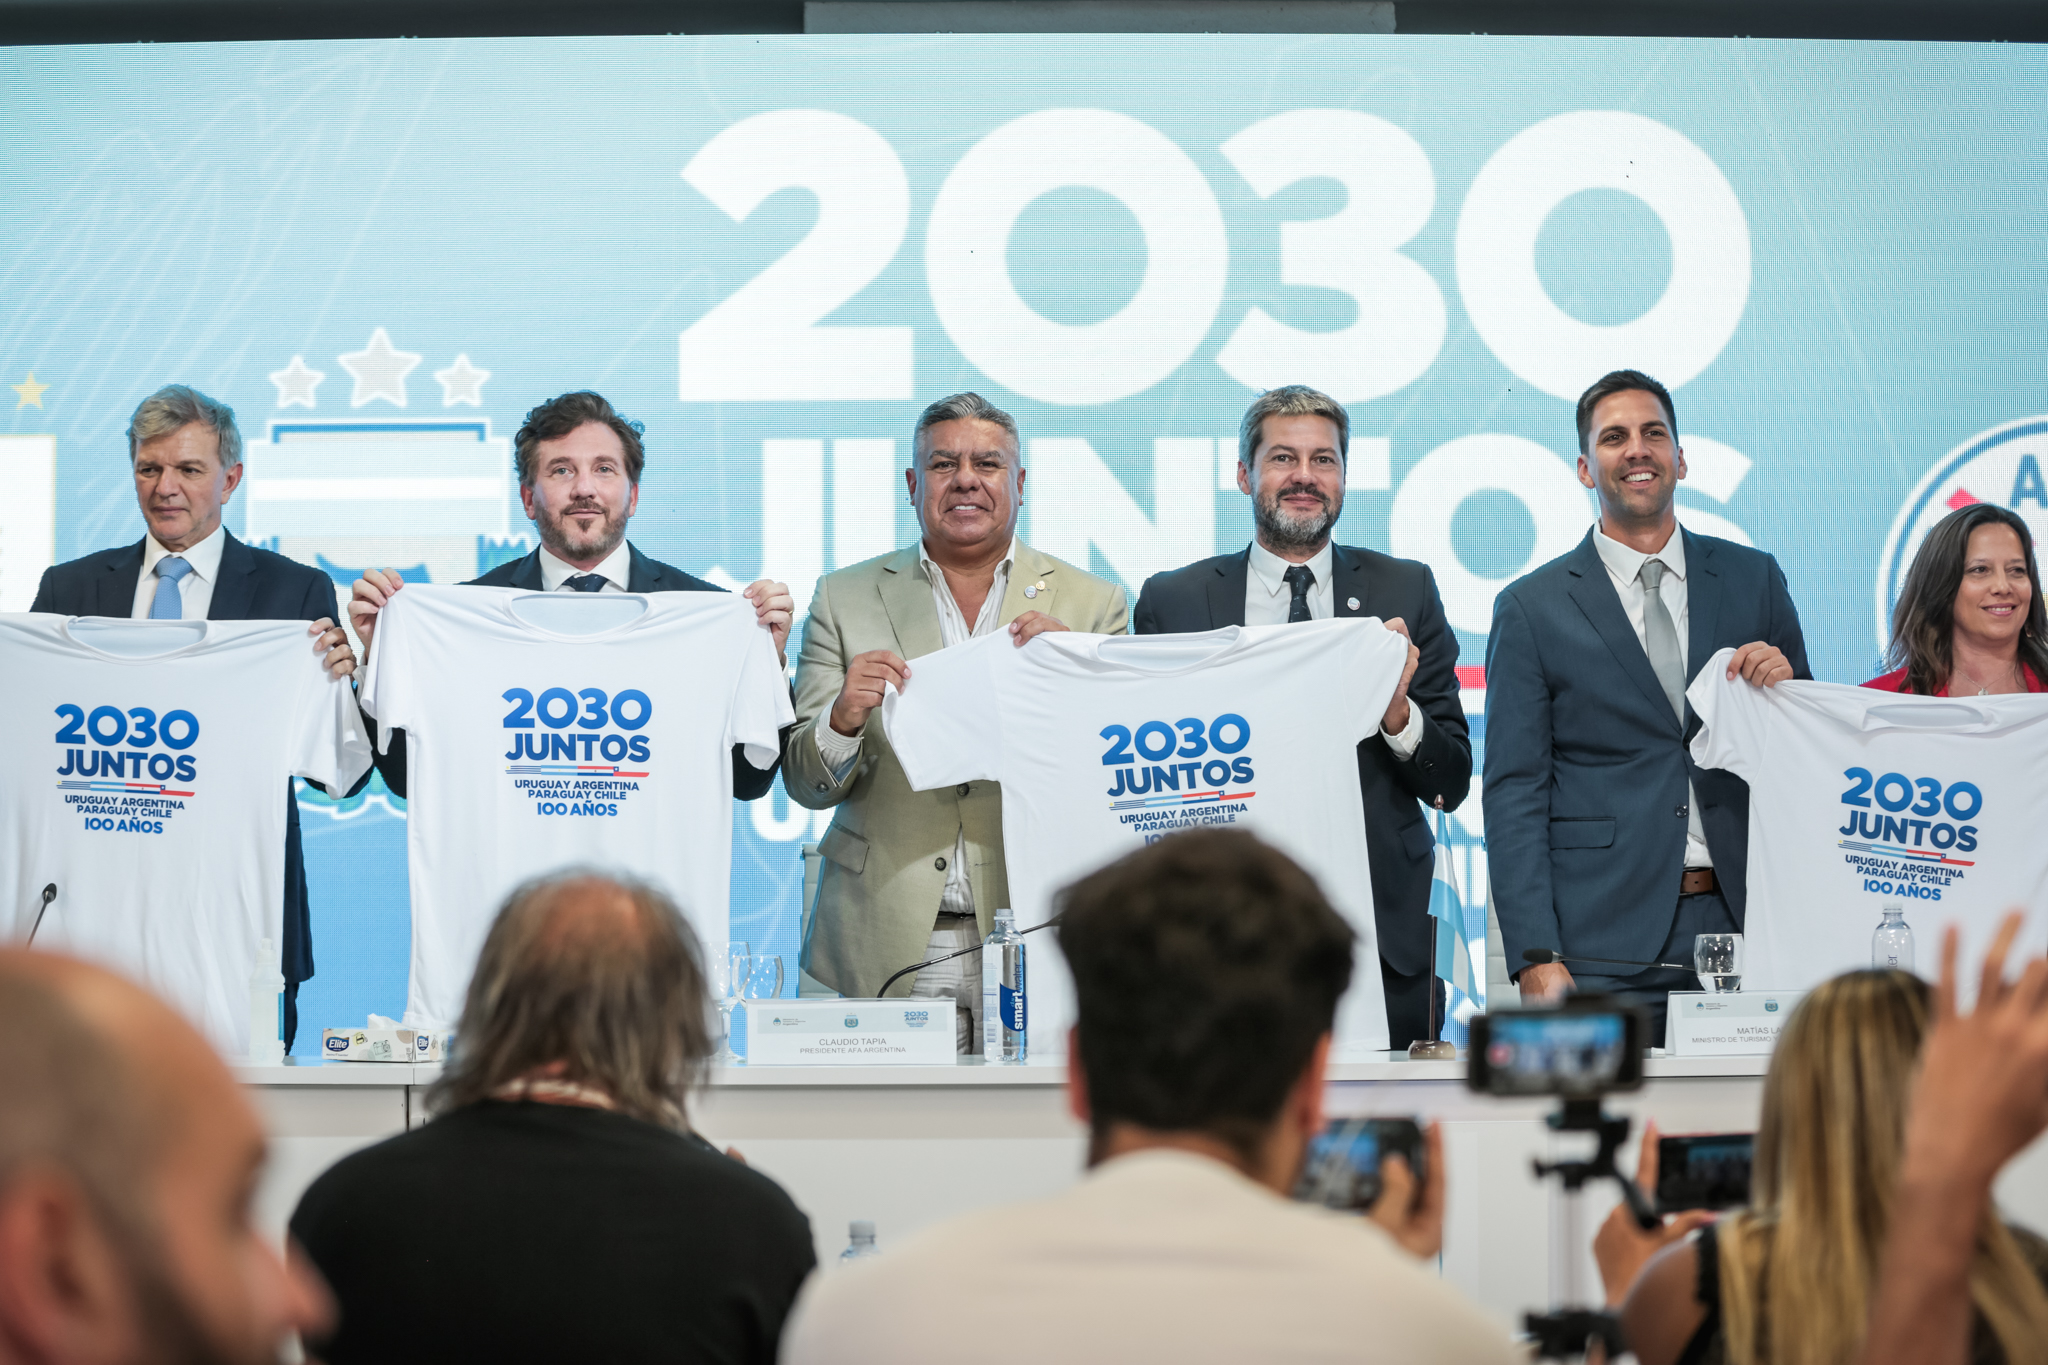 Μουντιάλ 2030: Για πρώτη φορά σε 3 ηπείρους και 6 χώρες η διοργάνωση